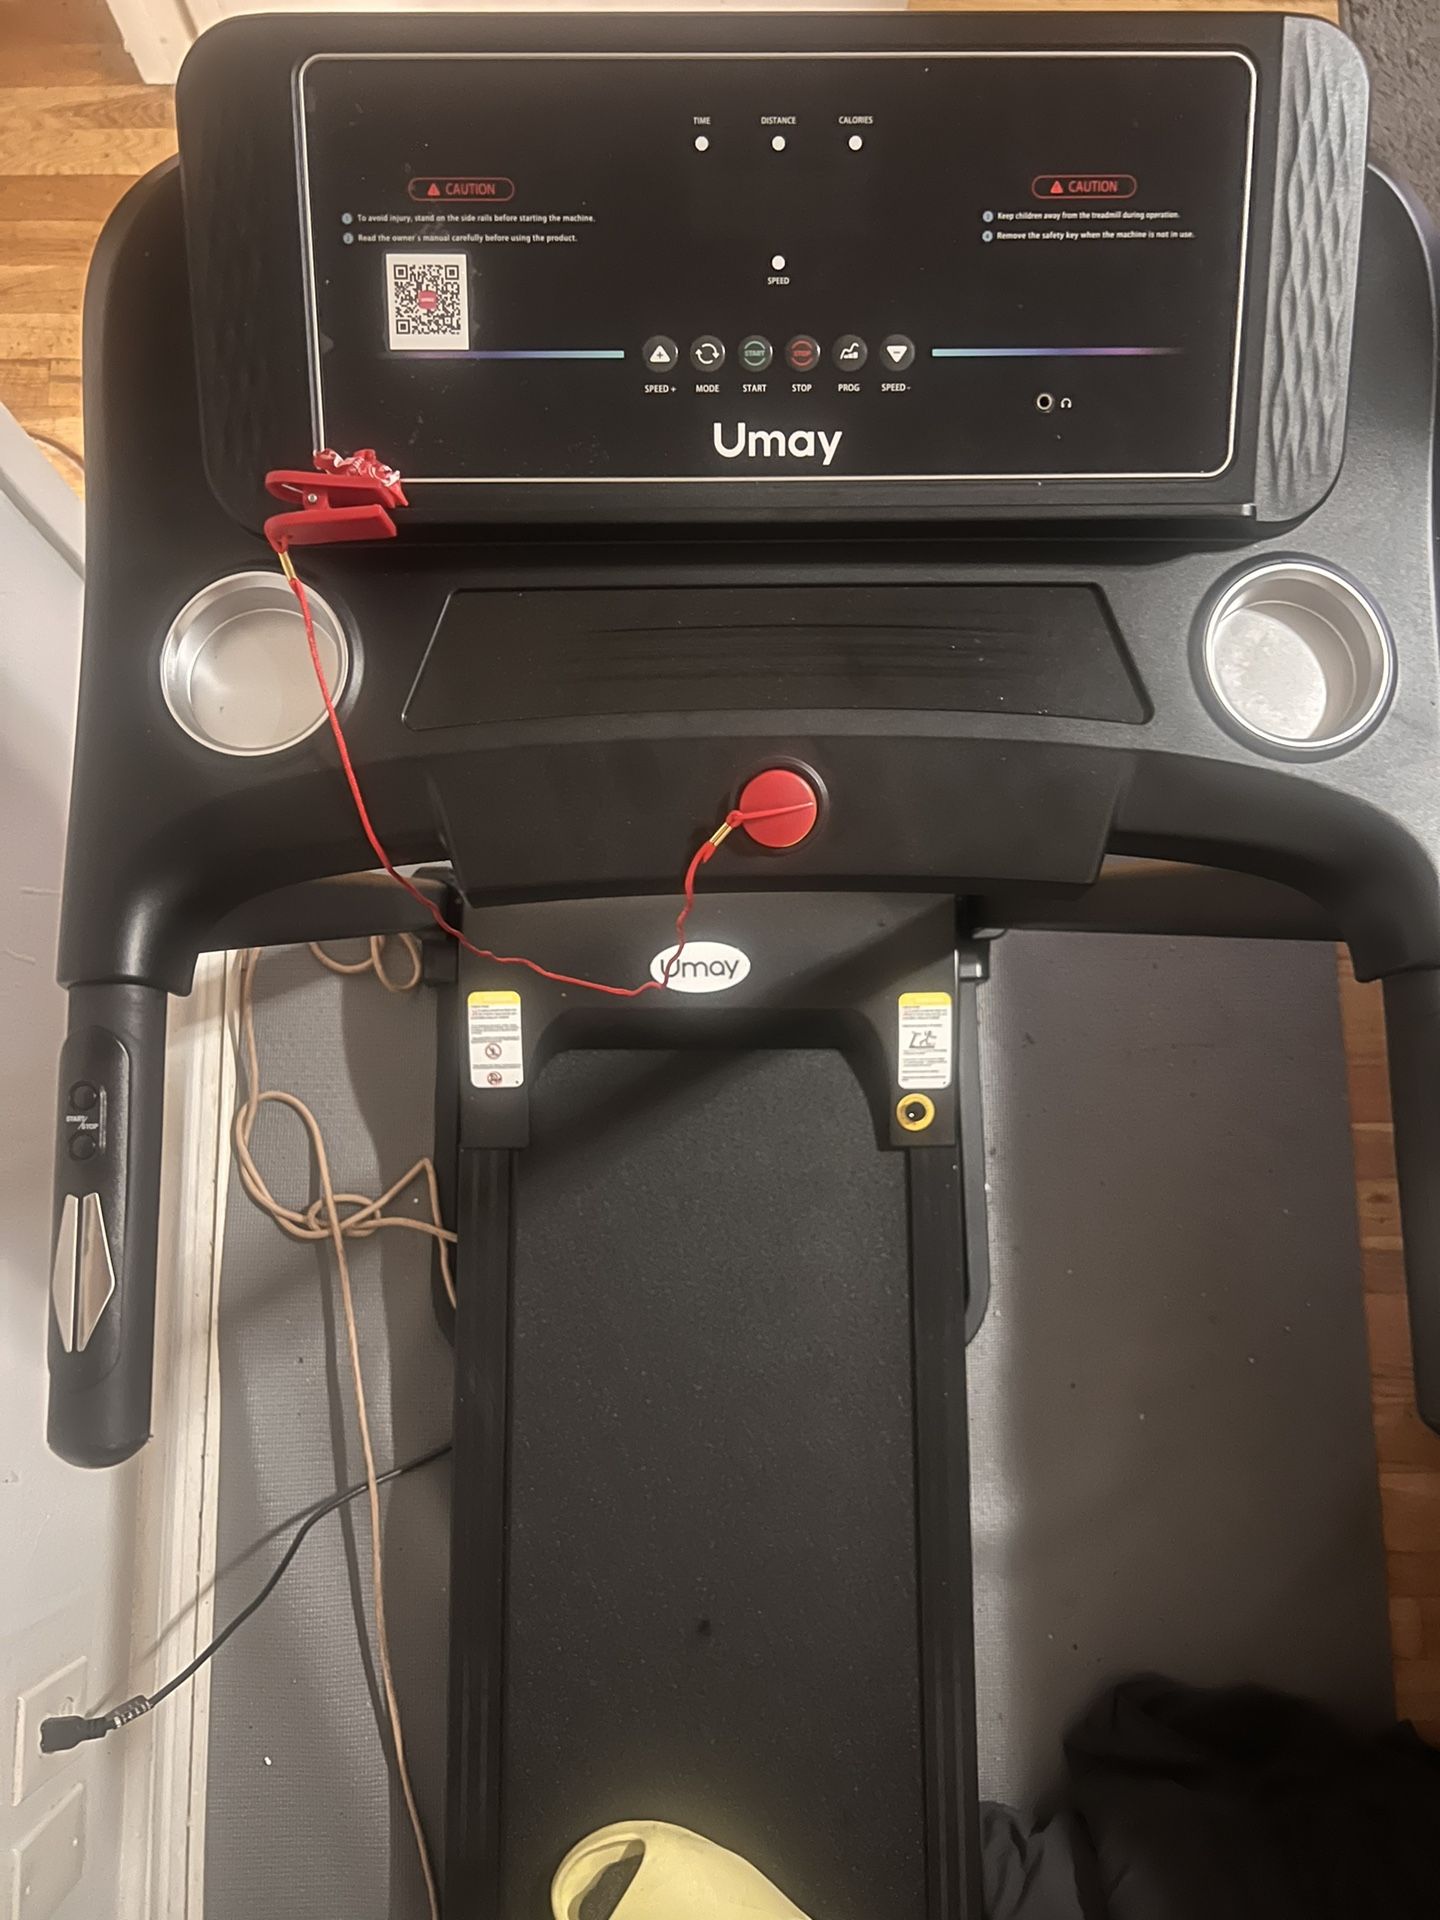 UMay Treadmill